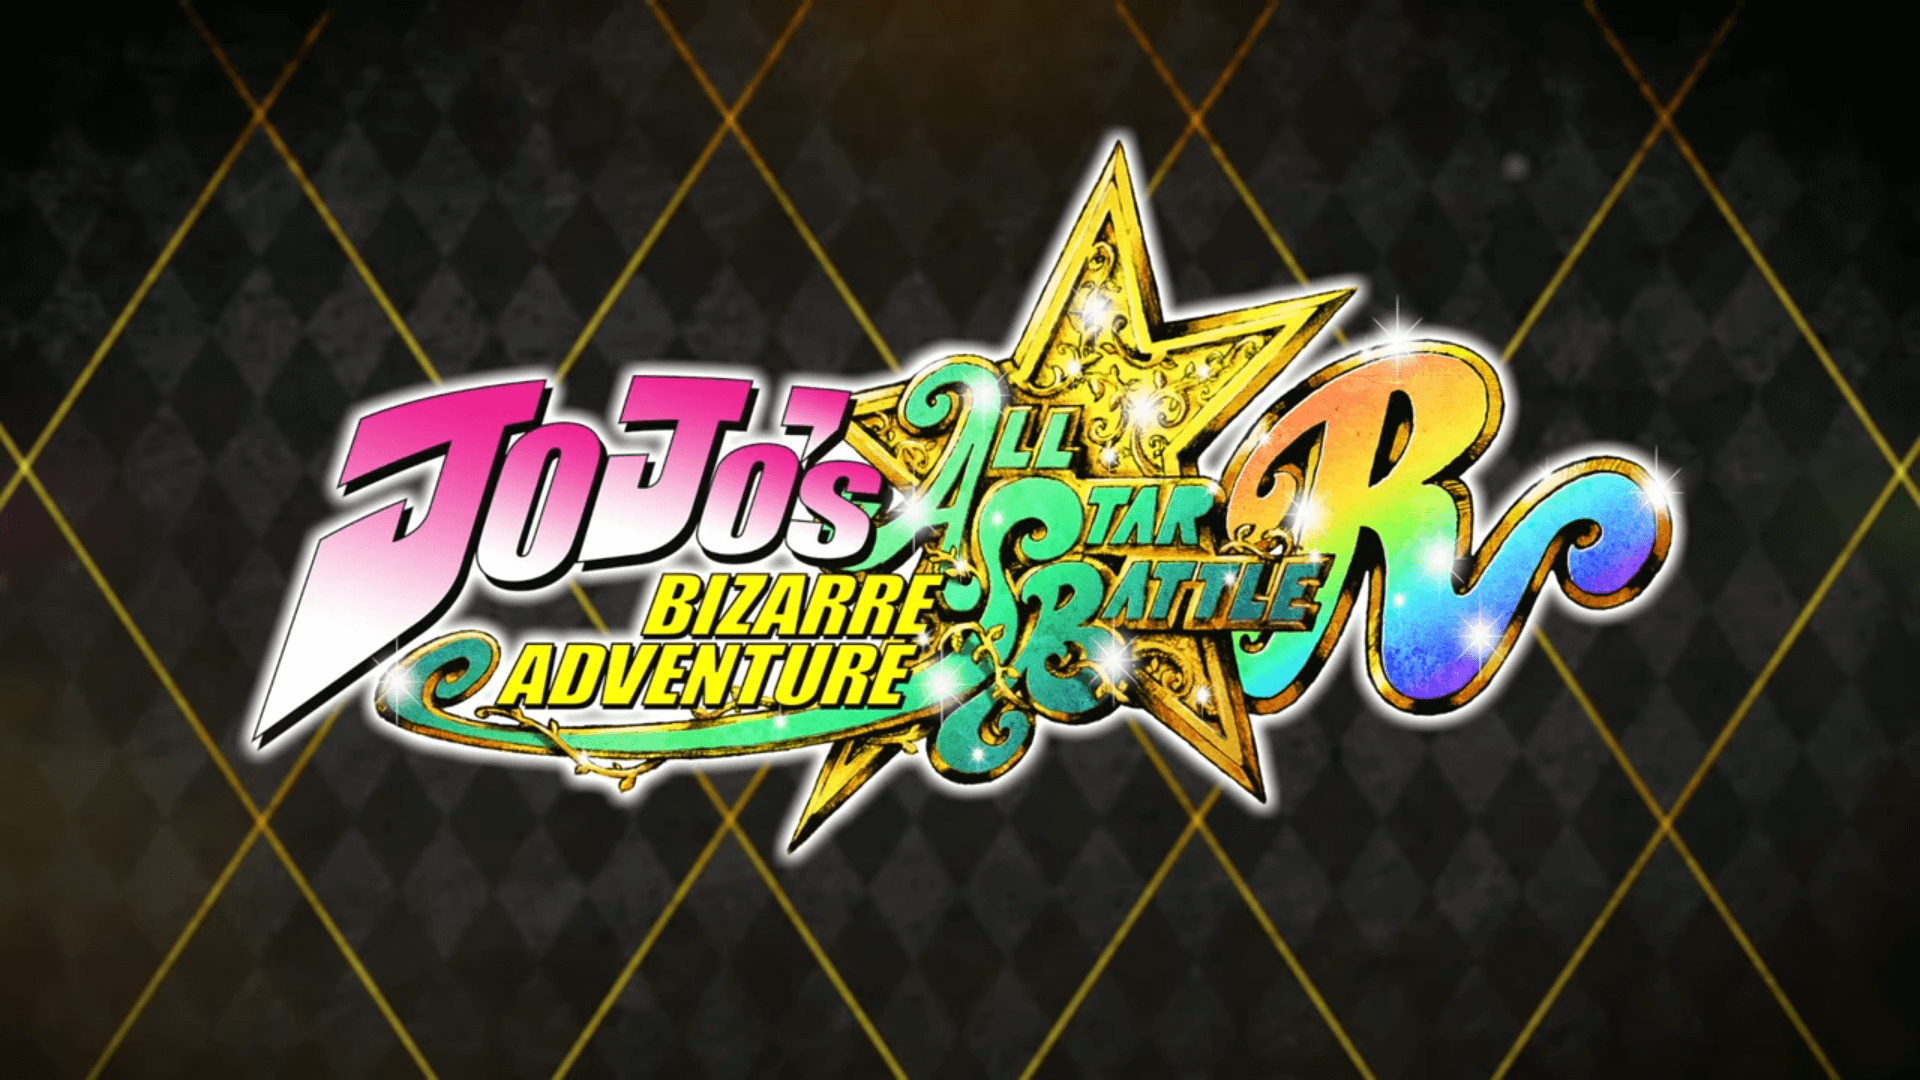 JoJo's Bizarre Adventure: All Star Battle R Announced for PS4 & PS5